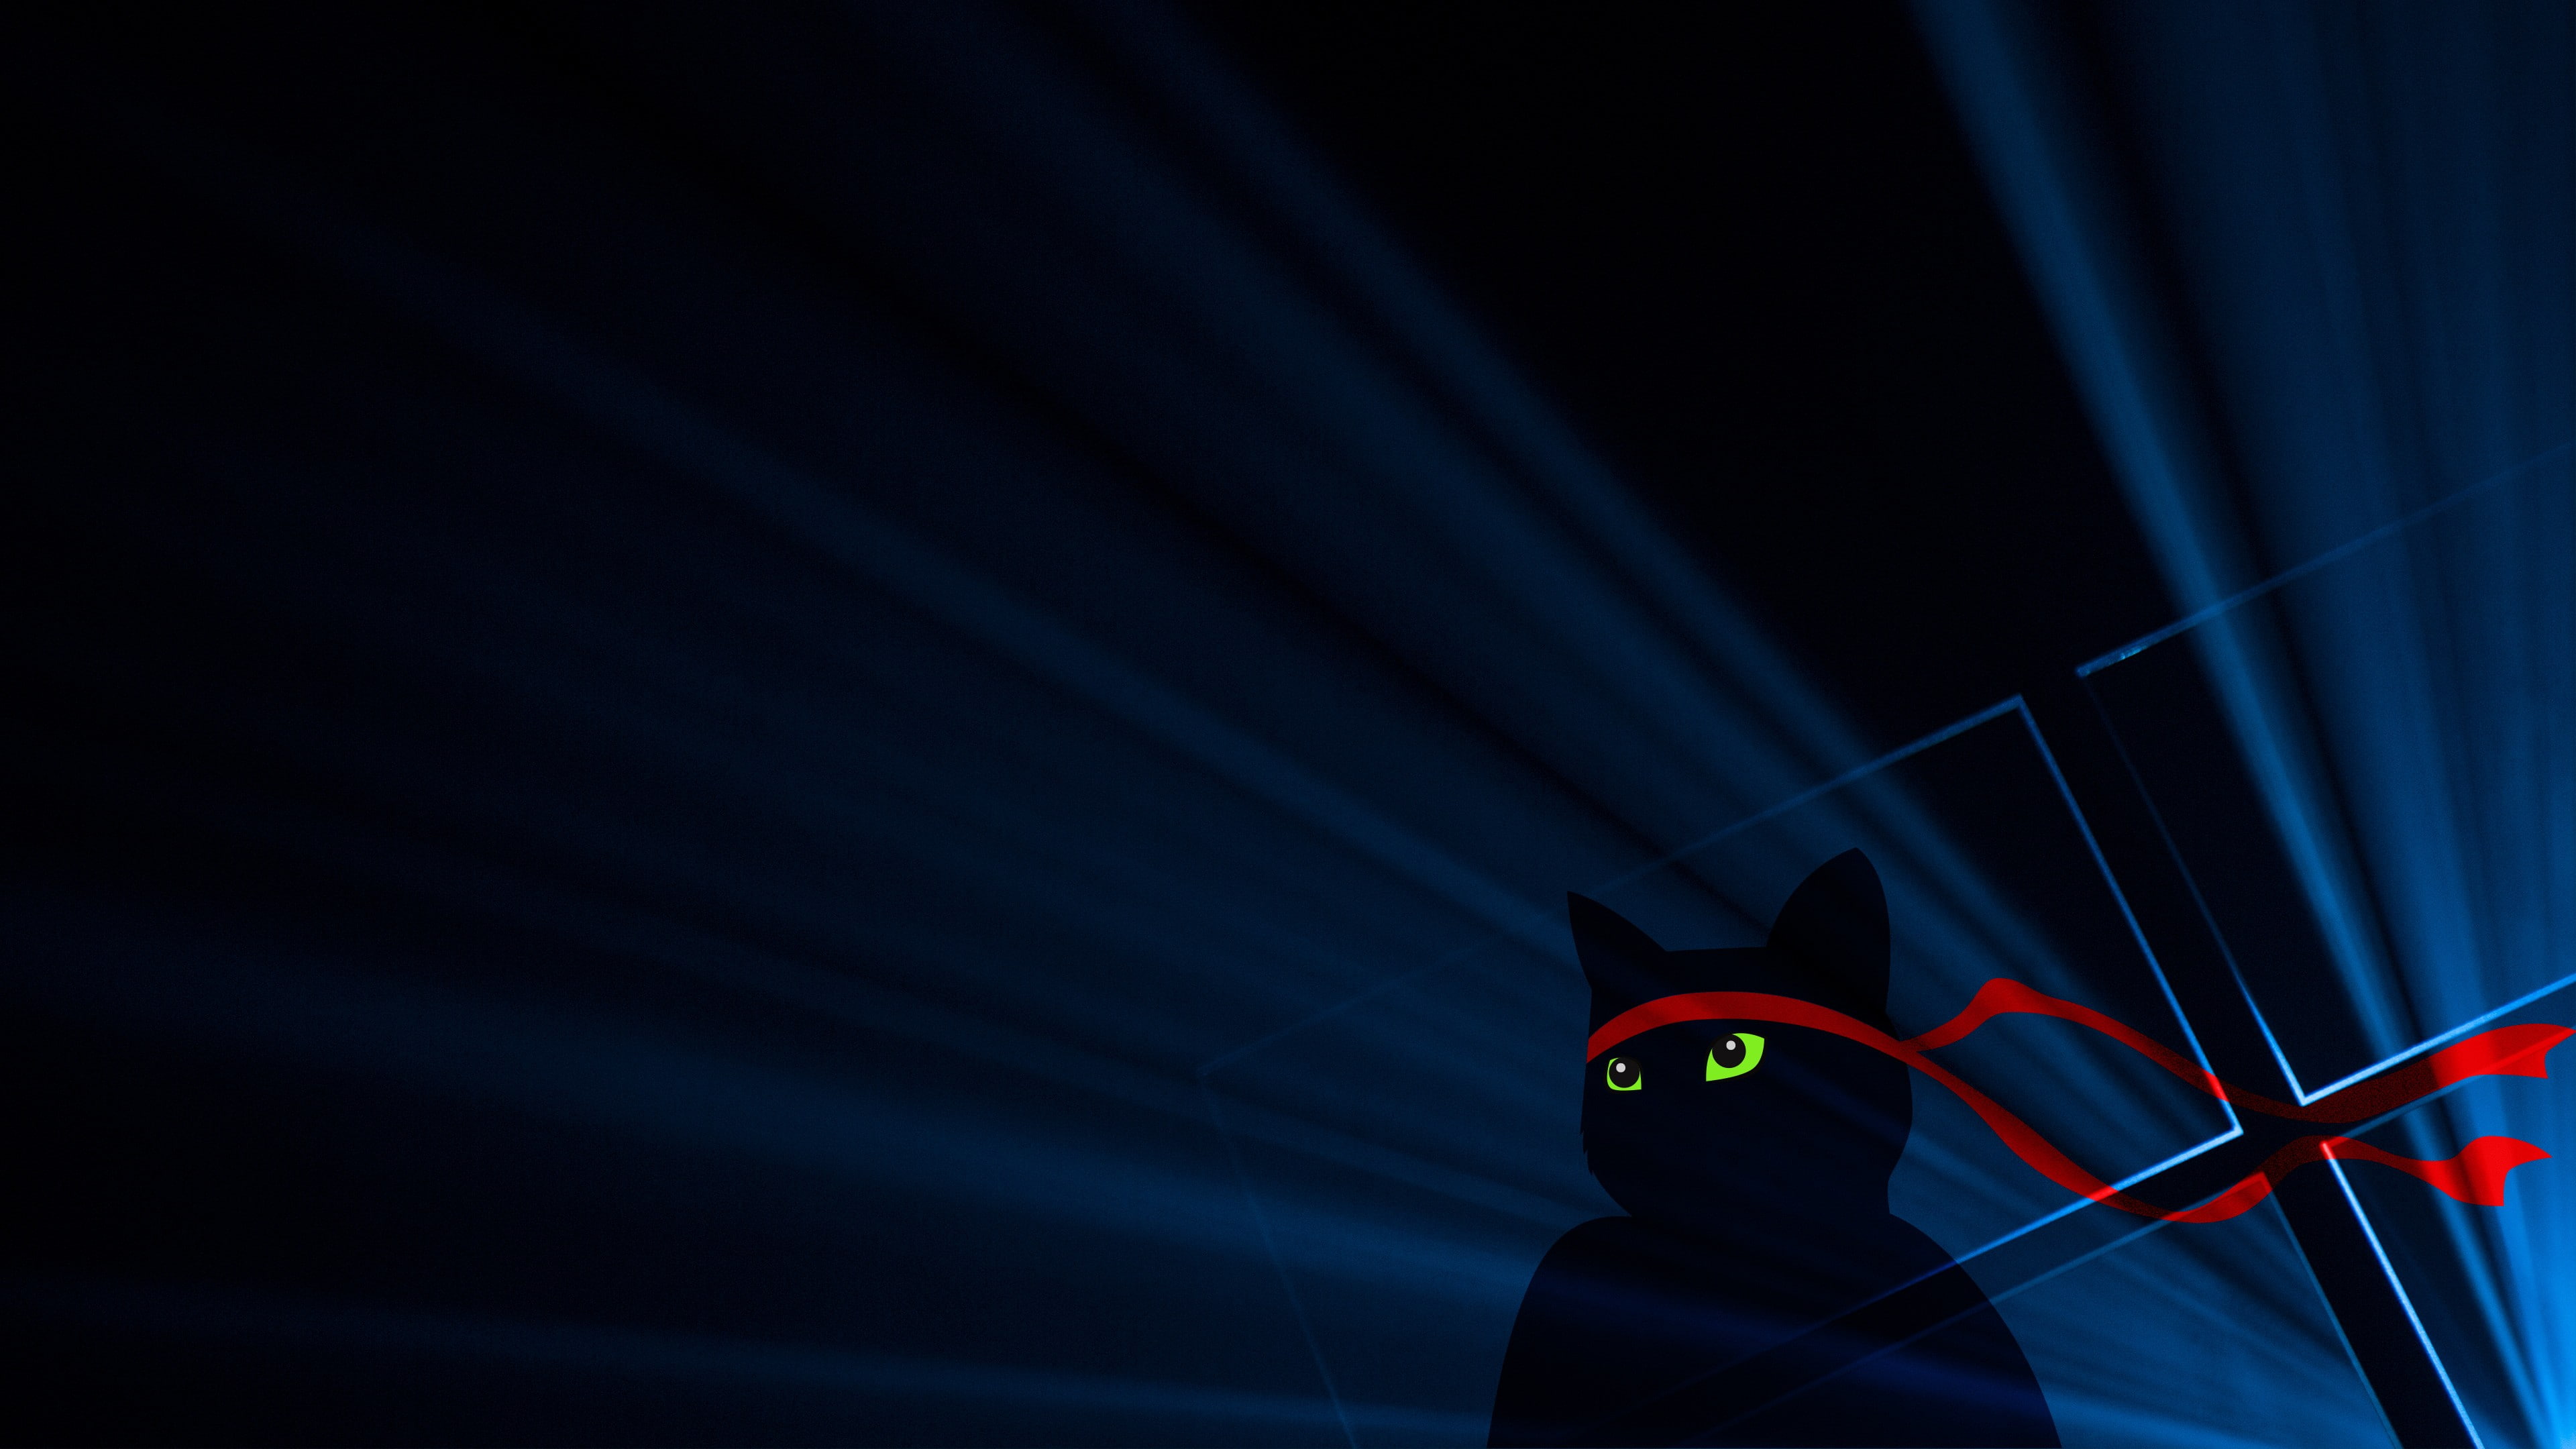 Windows 10, Windows 10 Anniversary, Ninja Cat, night, lighting equipment